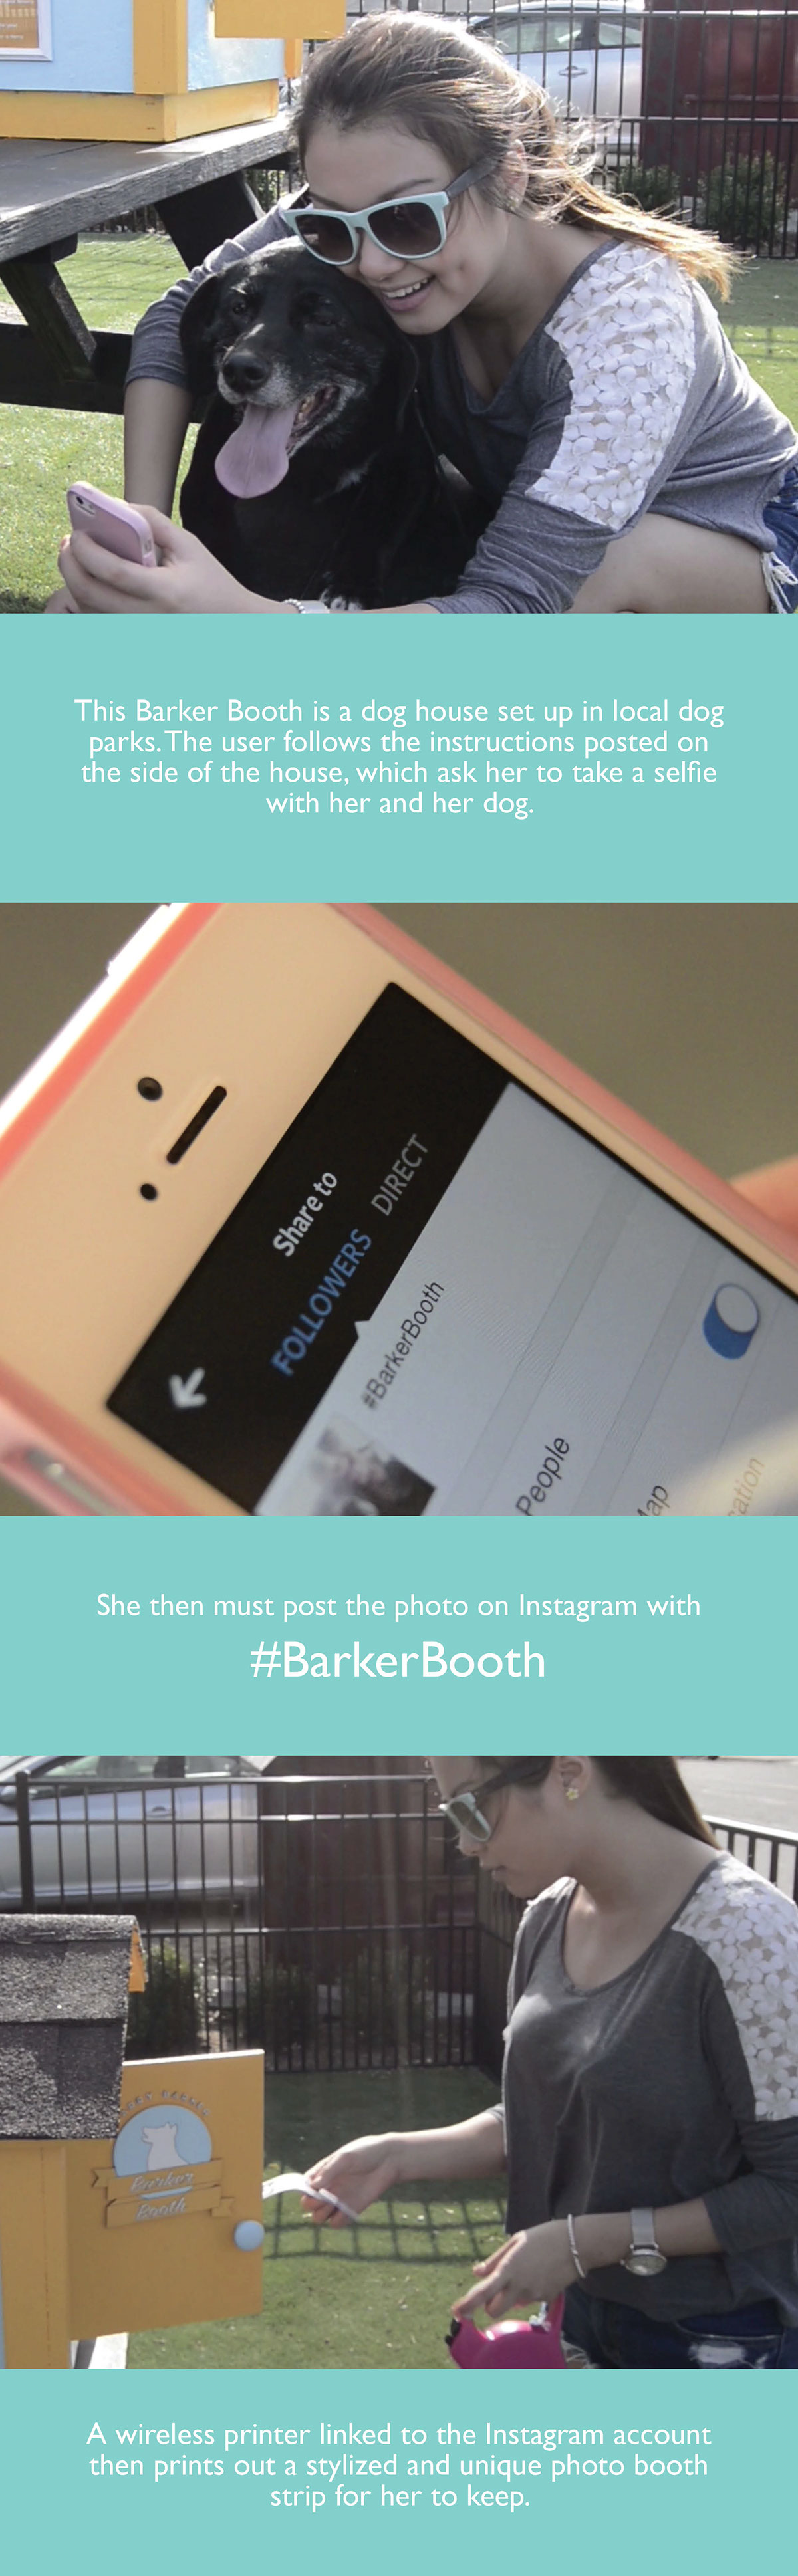 harry barker social barker digital campaign